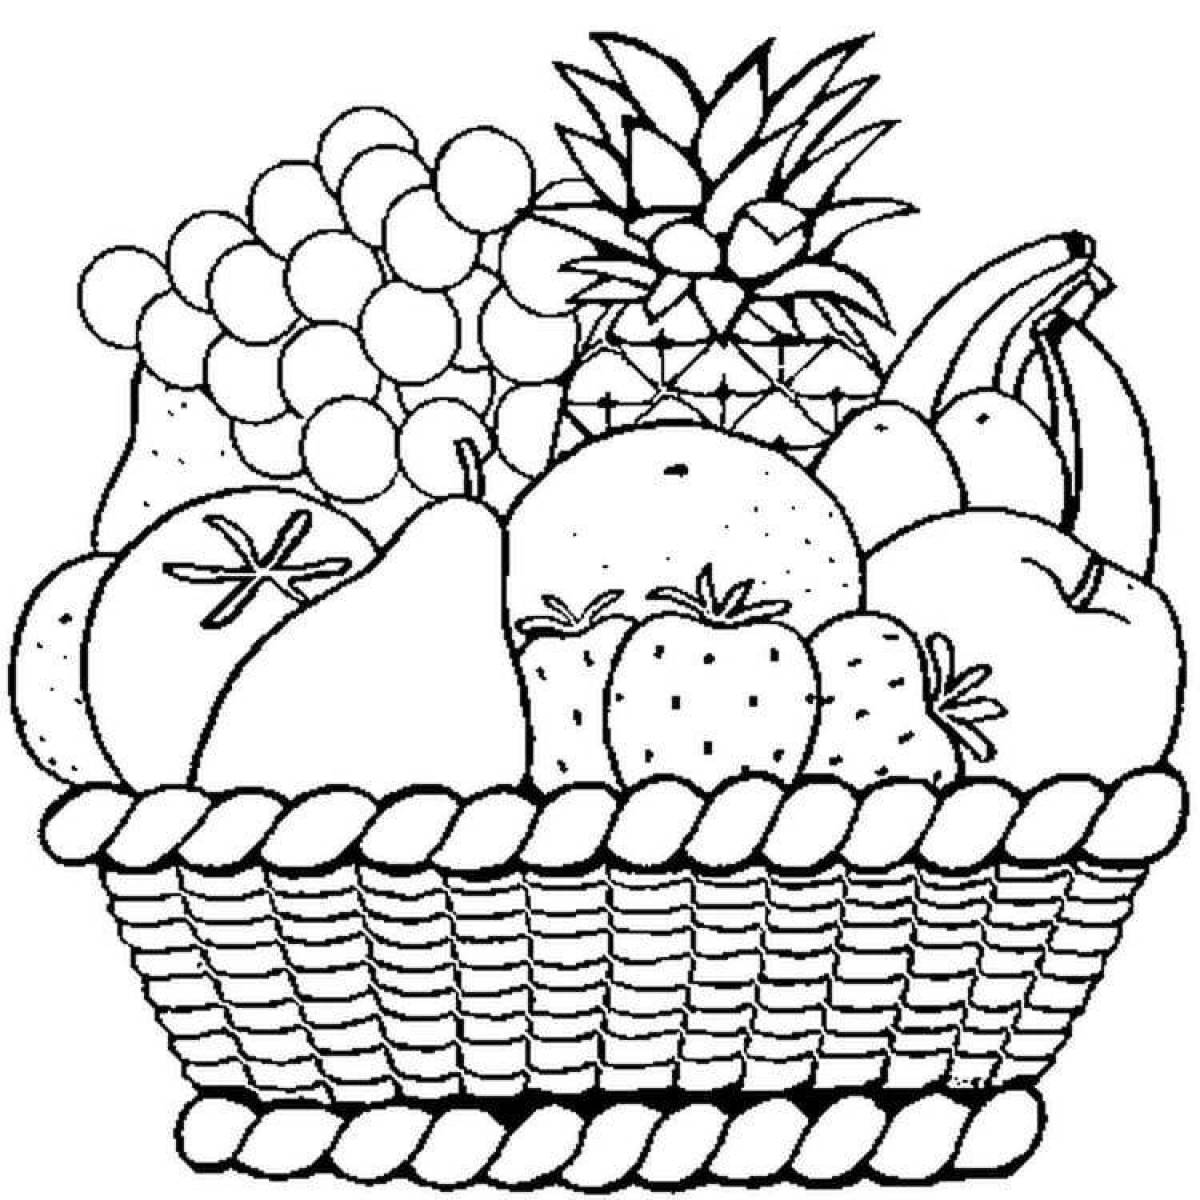 Vegetable basket #3